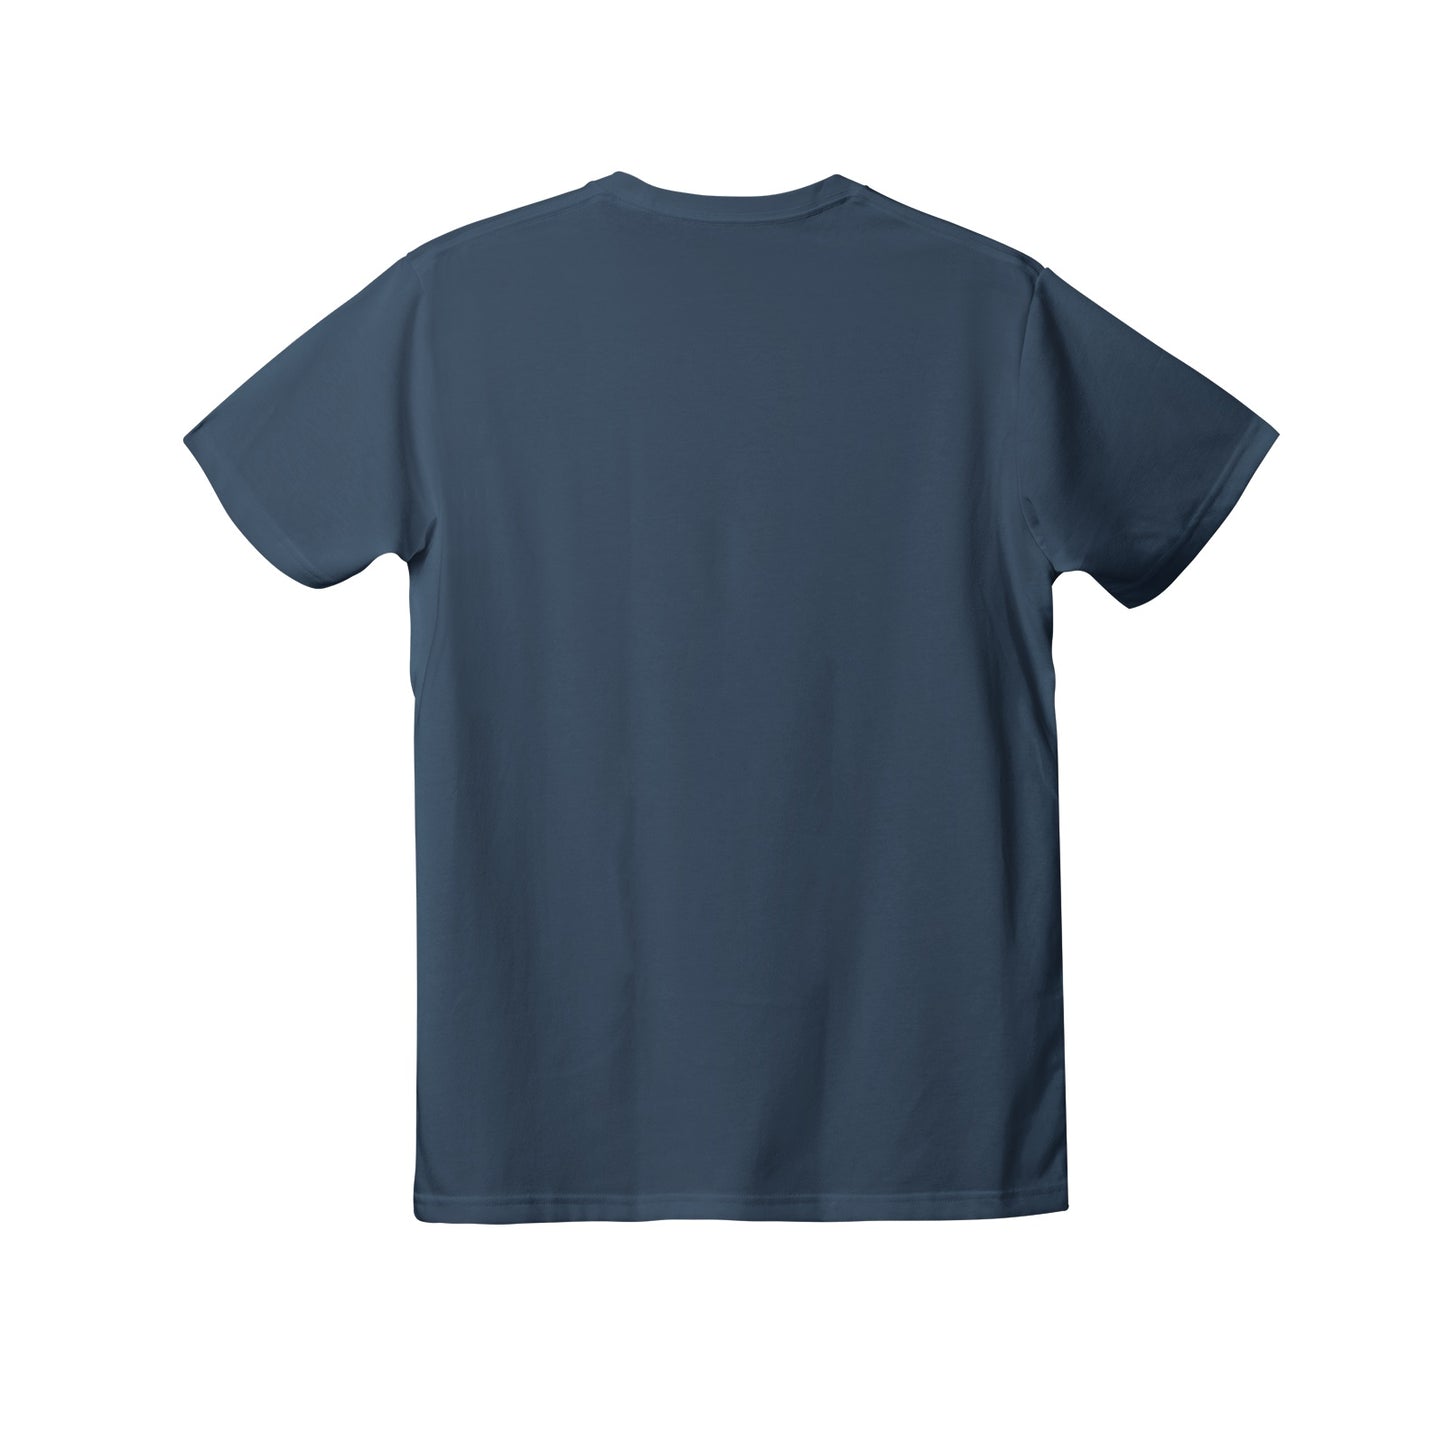 Women's Premium Cotton Adult T-Shirt